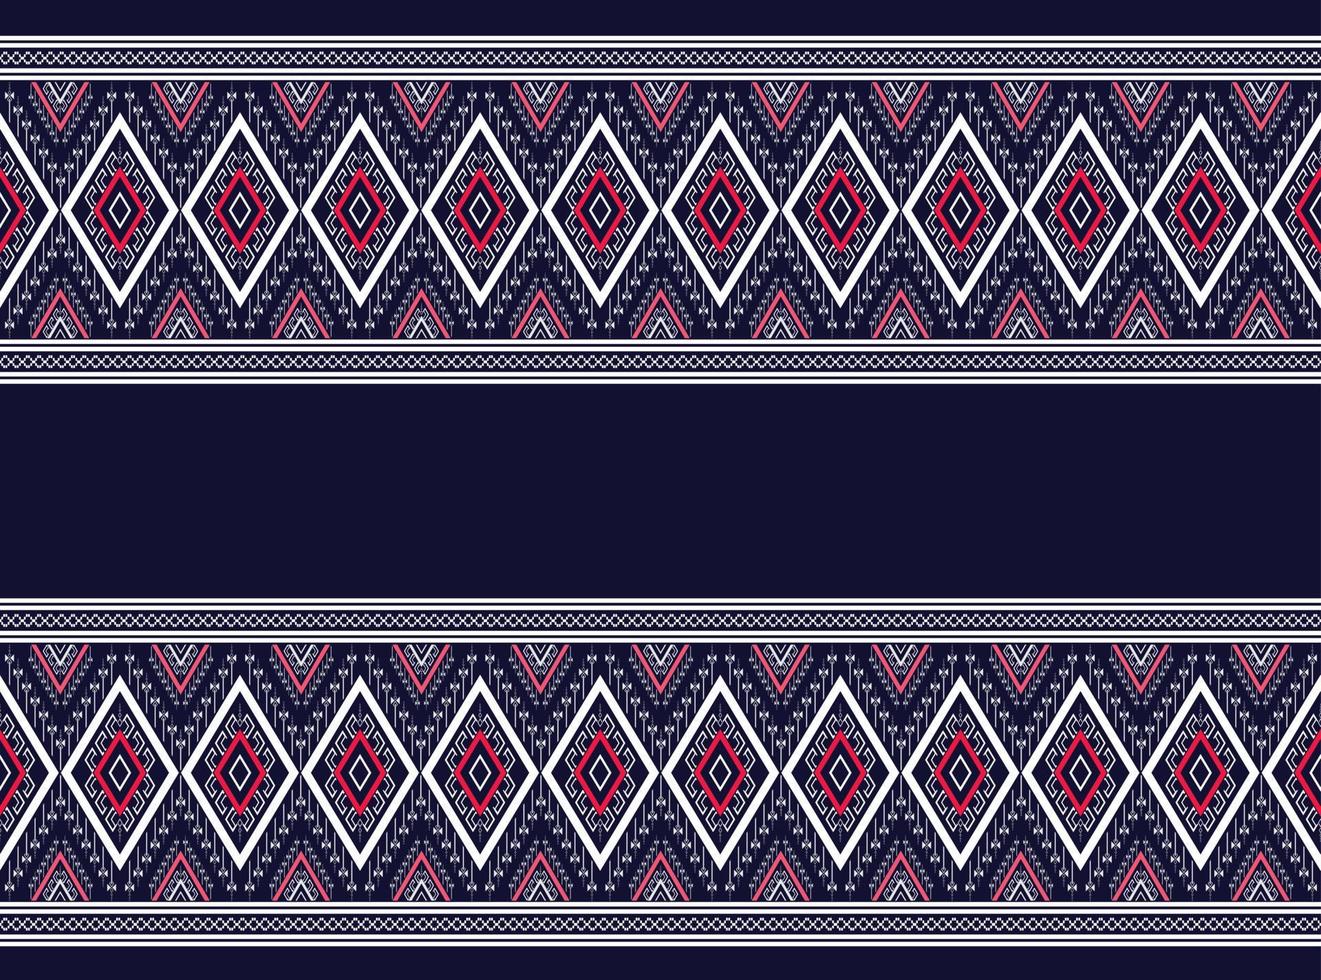 geometrische etnische patroon traditionele zwart-wit textuur voor rok, tapijt, behang, kleding, inwikkeling, batik, stof, kleding, blad gele achtergrond vector, illustratie borduurwerk patroon ontwerp vector